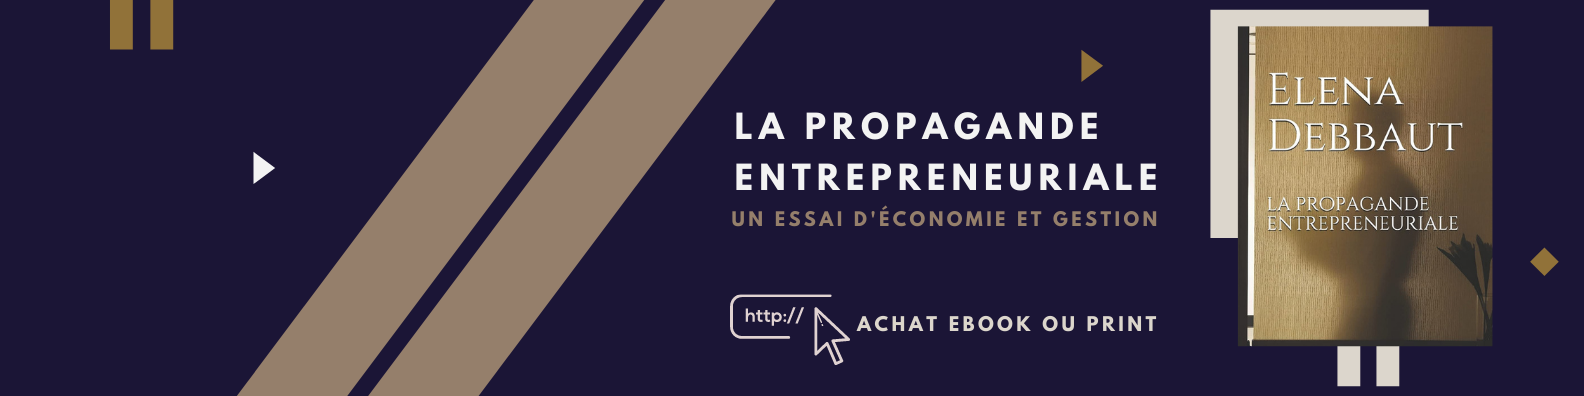 La propagande entrepreneuriale, un essai d'économie et gestion écrit par Elena Debbaut, consultante en entreprise et gestionnaire de crise